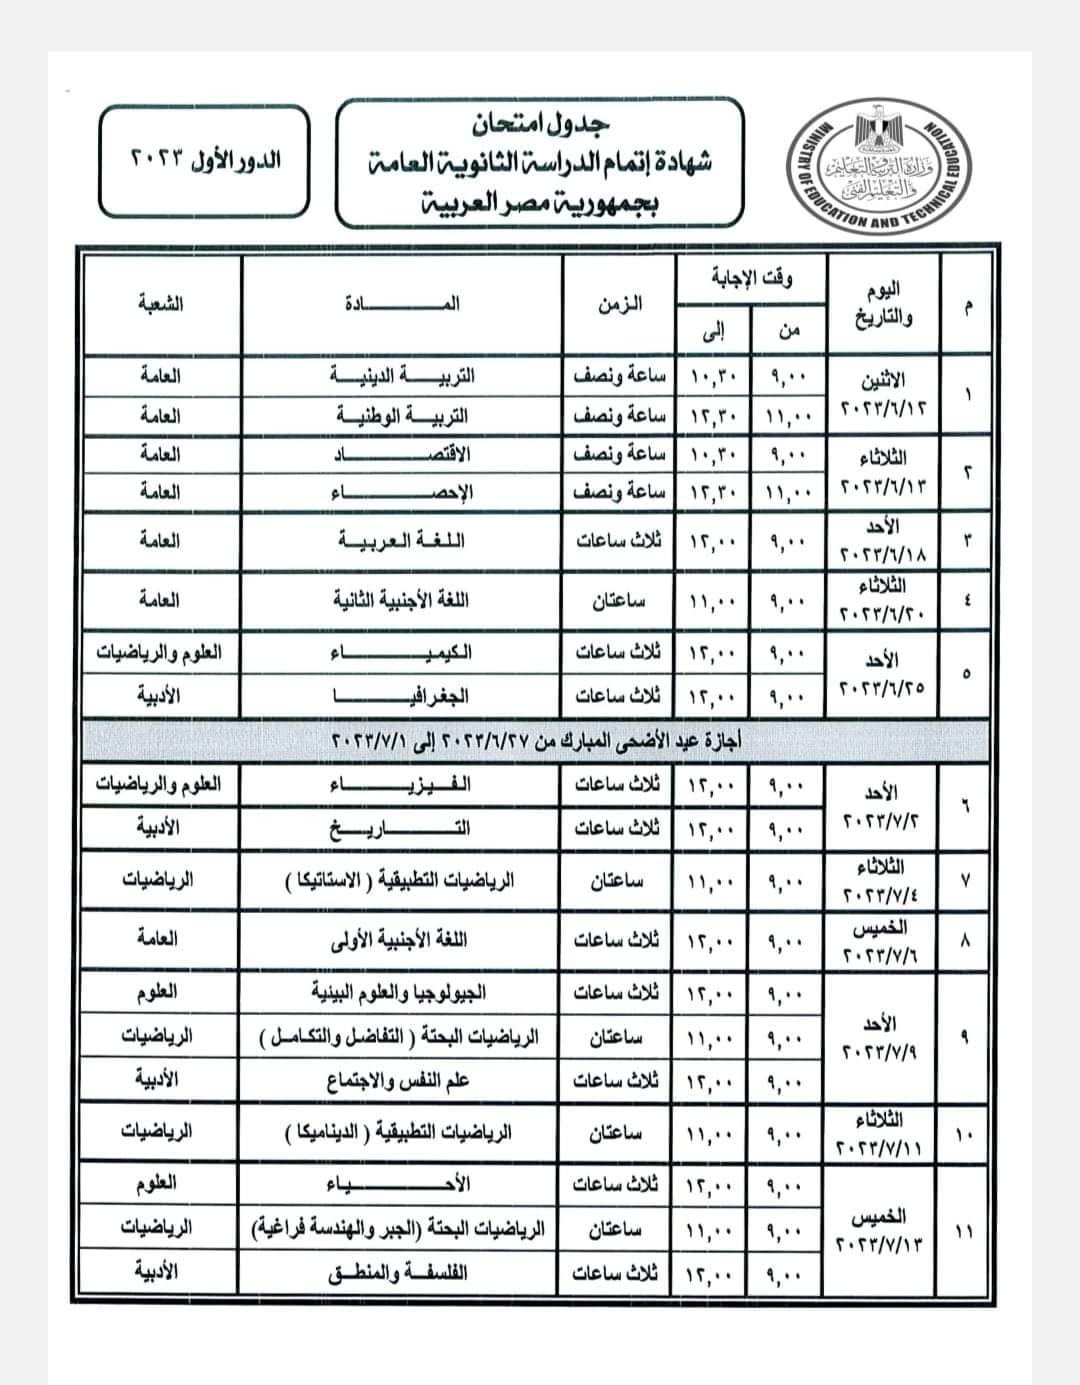 امتحان الثانوية العامة مصر.jpeg